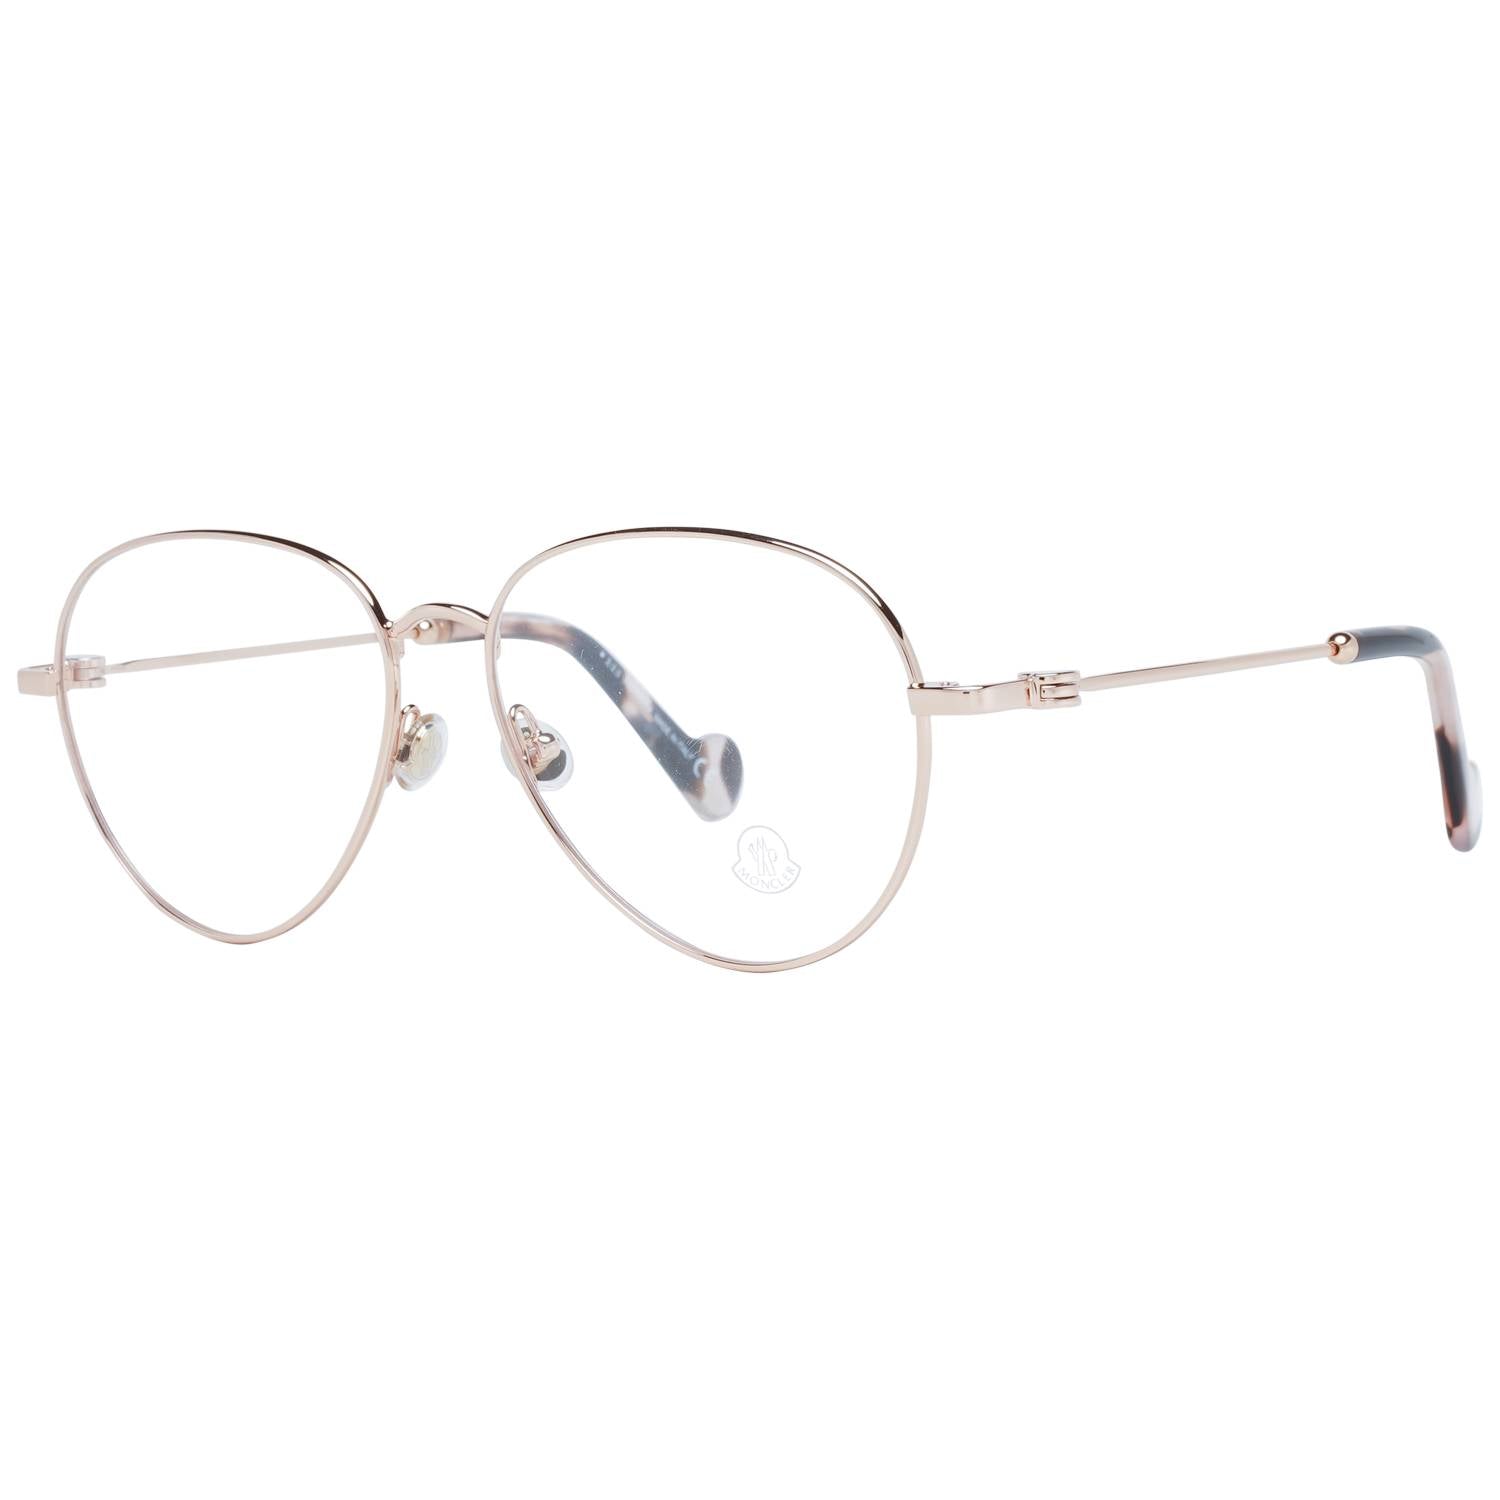 Moncler Eyeglasses Moncler Glasses Frames ML5068 033 55mm Eyeglasses Eyewear UK USA Australia 